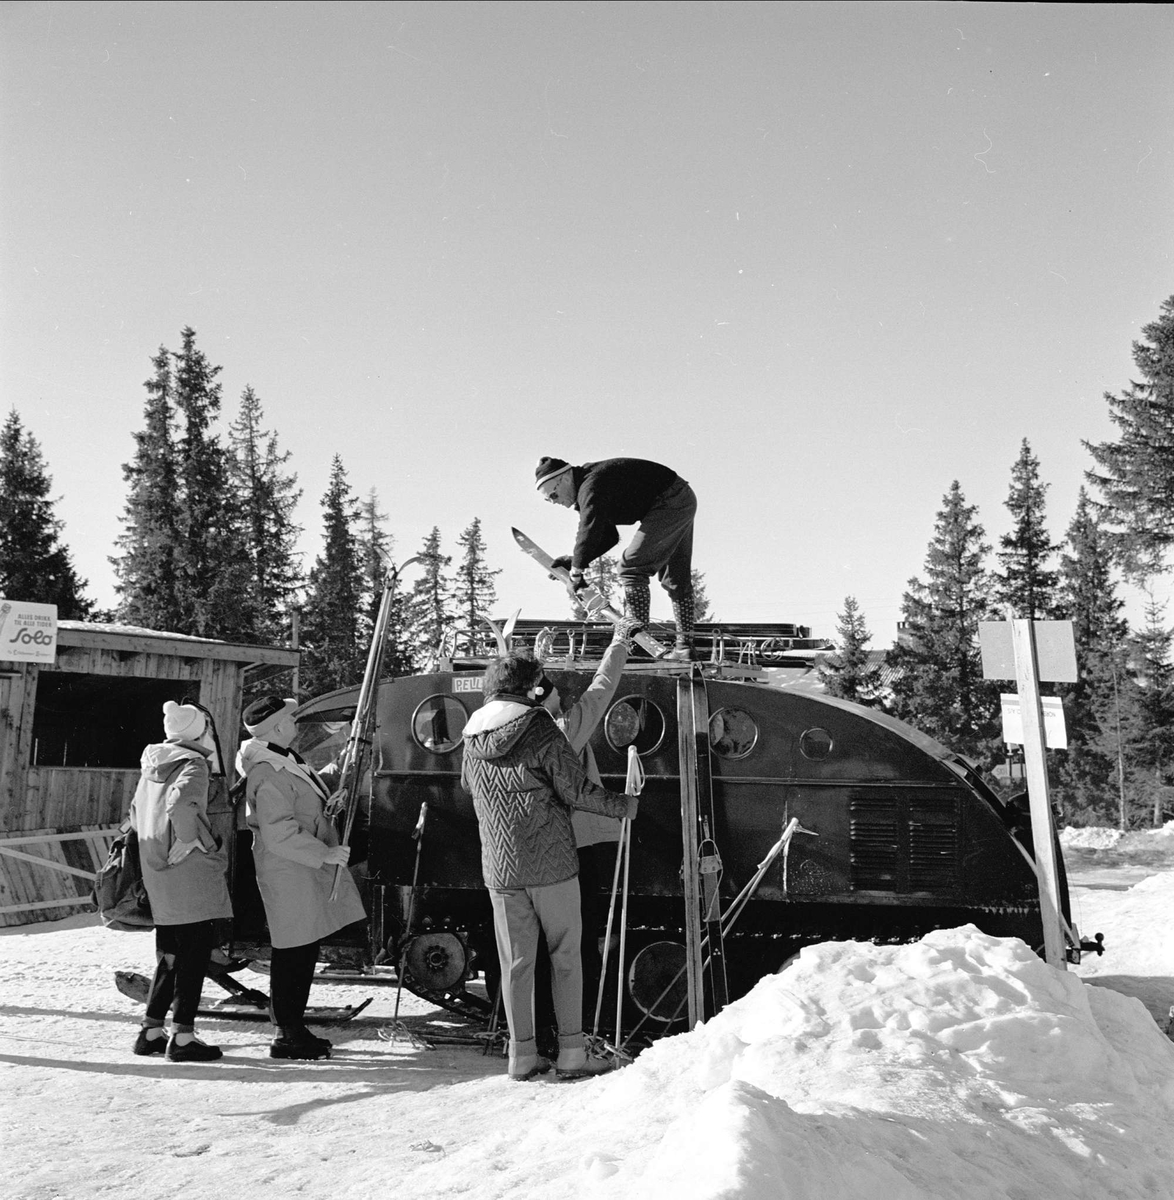 Øyer, Oppland, 25.03.1964. Skiturister og snøbil på Pellestova.